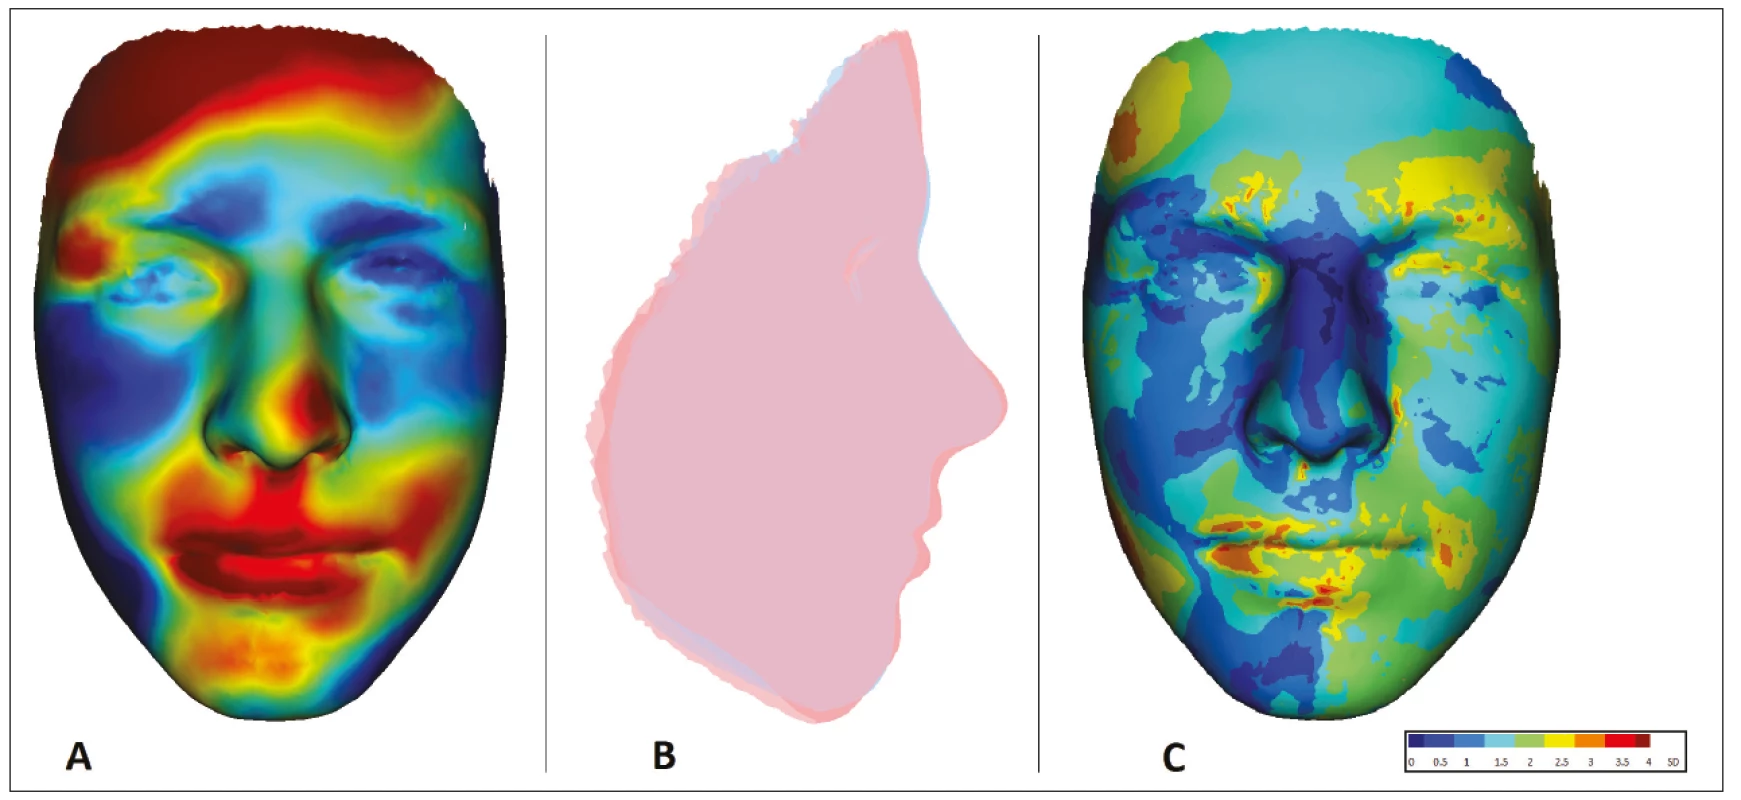 Znázornění oblastí
deformace obličeje
u 15letého pacienta
s OAVS z obr. 3
v porovnání s fyziologickou
normou zdravé populace
odpovídajícího věku a pohlaví<br>
A. porovnání tvaru obličeje:
červeně – oblasti protruze
vůči normě; modře – oblasti
retruze vůči normě;<br>
B. porovnání profi lu obličeje:
červeně – pacient A;
modře – norma;<br>
C. vizualizace odchylek tvaru
obličeje od normy pomocí SD
skóre (obrazová
dokumentace oddělení
ortodoncie a rozštěpových
vad, Stomatologická klinika
FNKV, Praha)<br>
Fig. 4
Visualization of areas of facial
deformation in a 15-year-old
OAVS patient of Fig 3 compared
to the physiological norm
of a healthy population
of corresponding age and sex<br>
A. face shape comparison:
red – protrusion area to
normal; blue – areas
of retrusion to norm;<br>
B. face profi le comparison:
red – patient; blue – norm;<br>
C. visualization of deviations
of face shape from norm using
SD score (Department
of Orthodontics and Cleft
Anomalies, 3rd Faculty
of Medicine, Charles University
and Kralovske Vinohrady
University Hospital)